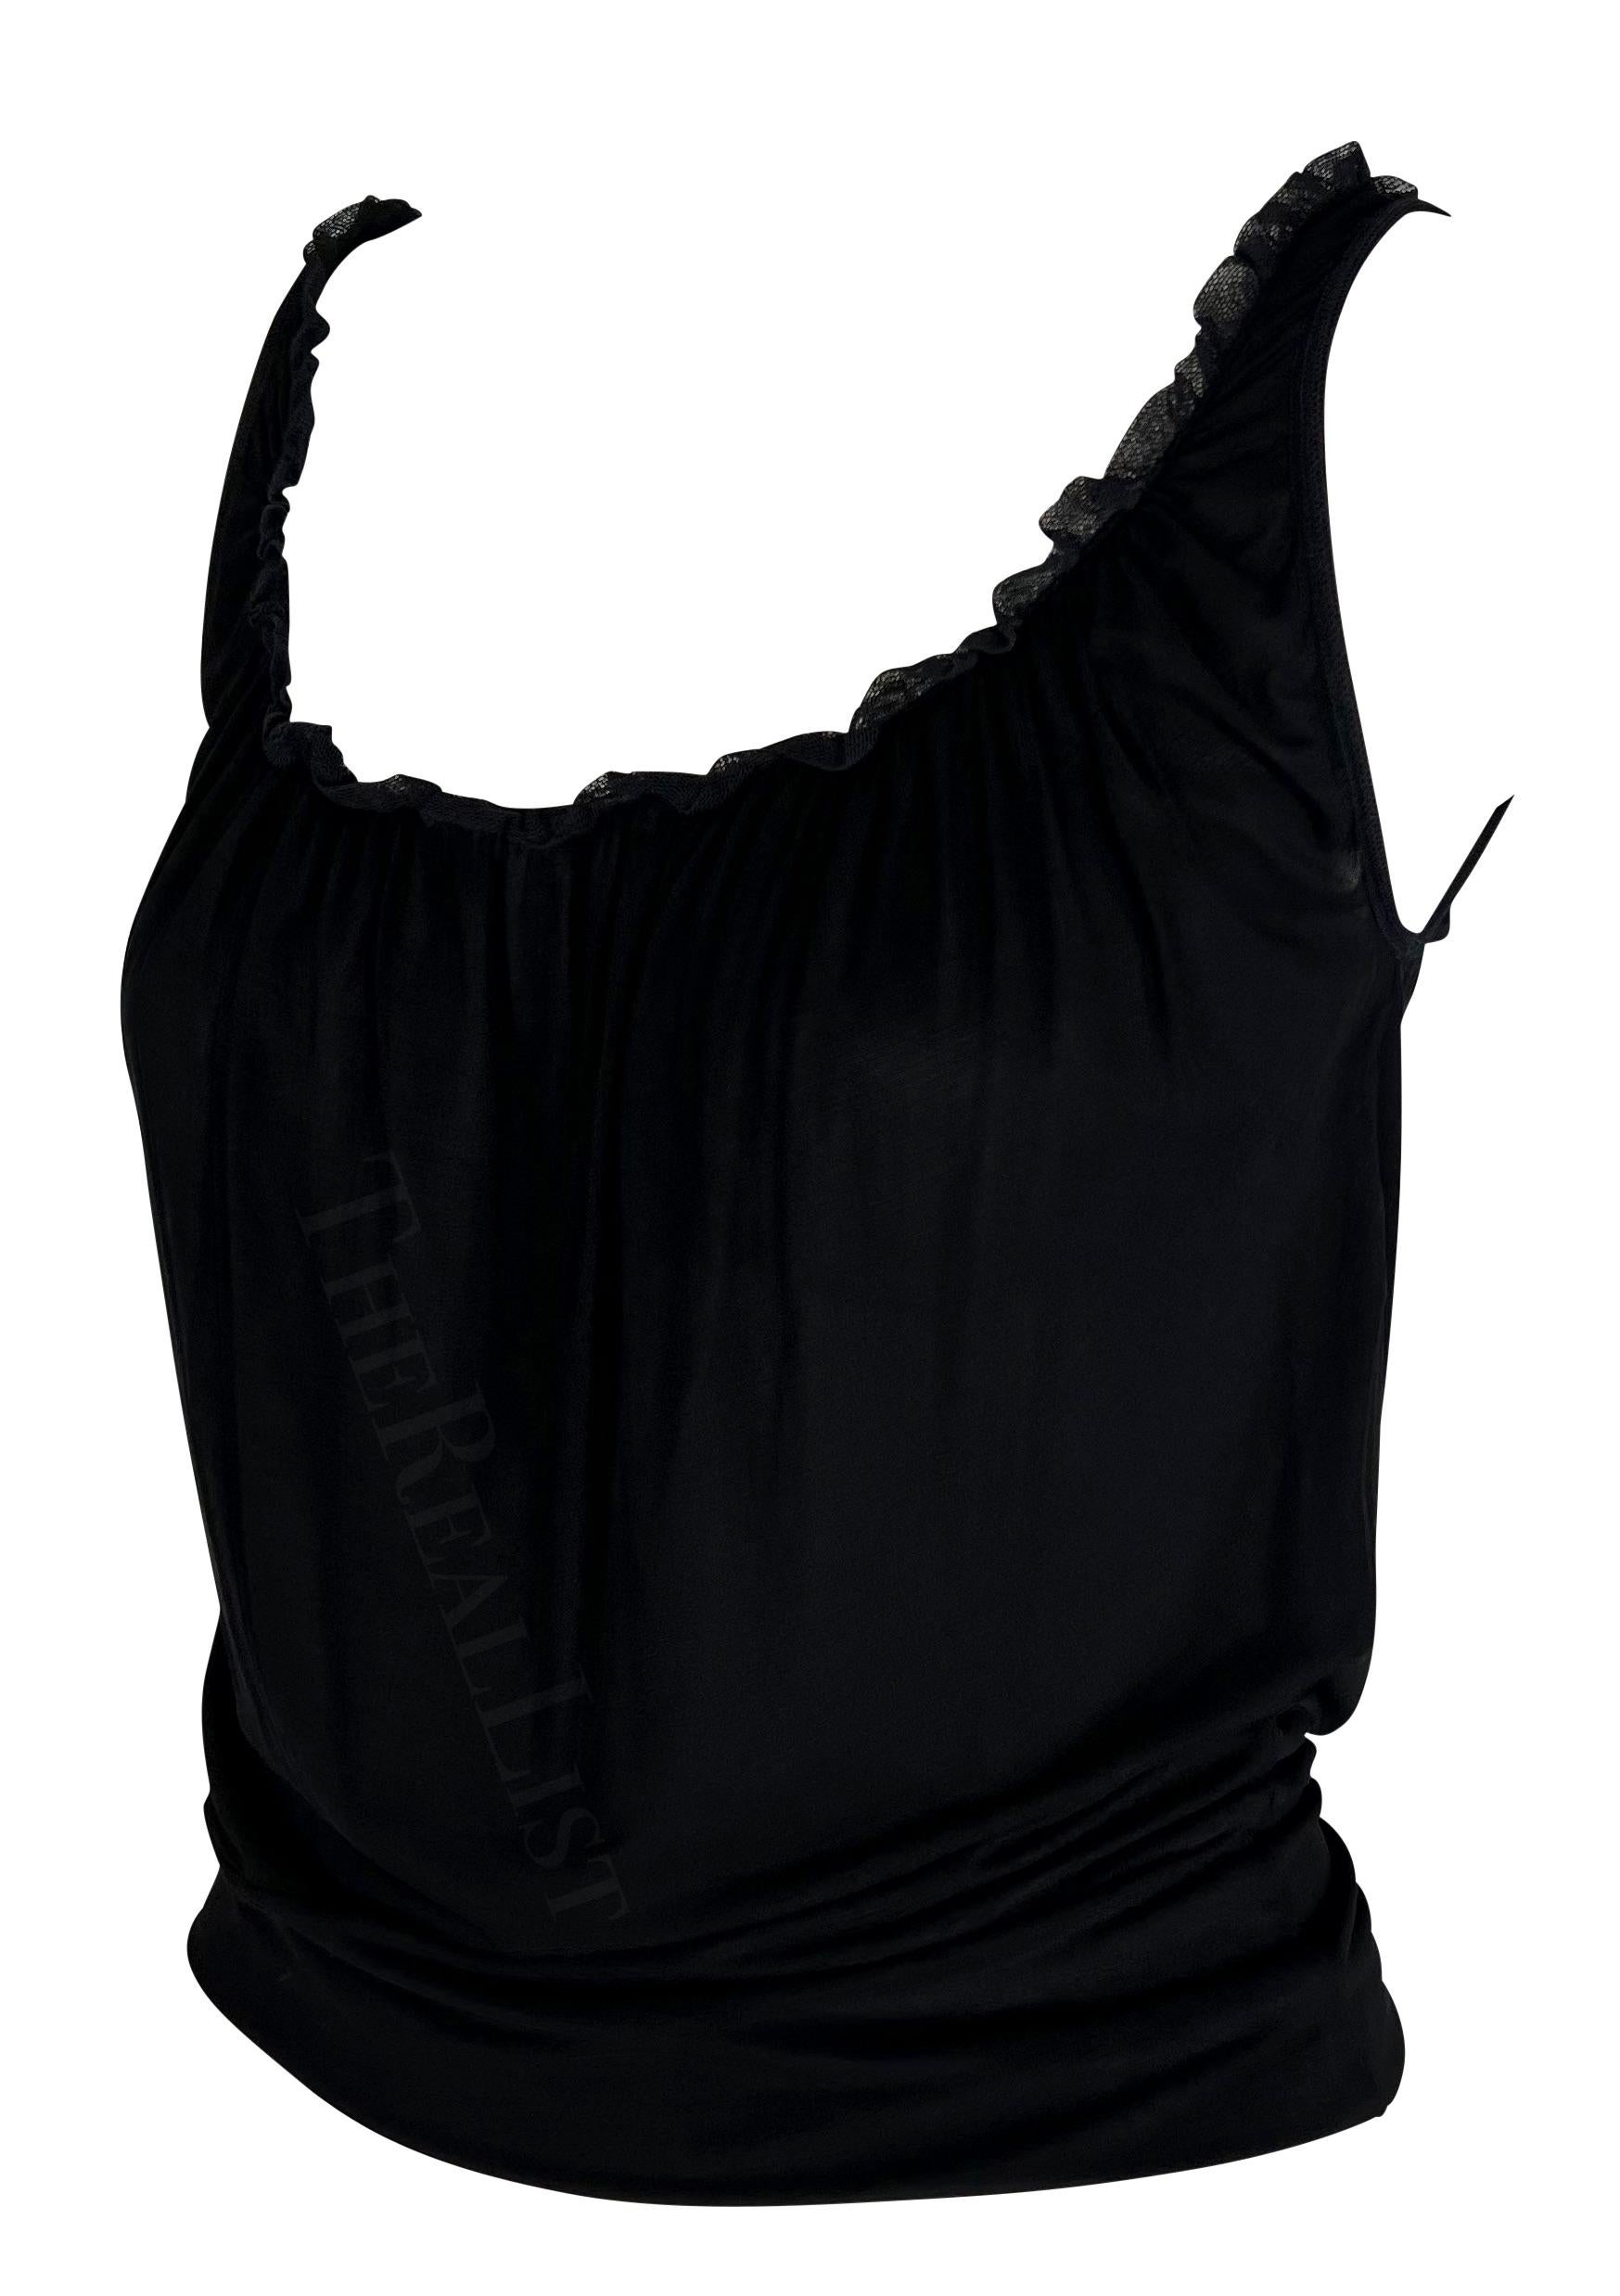 TheRealList présente : un fabuleux débardeur noir à volants Gucci, conçu par Tom Ford. Datant du début des années 2000, ce débardeur noir chic présente une large encolure dégagée accentuée par une courte bordure à volants. Ajoutez à votre garde-robe